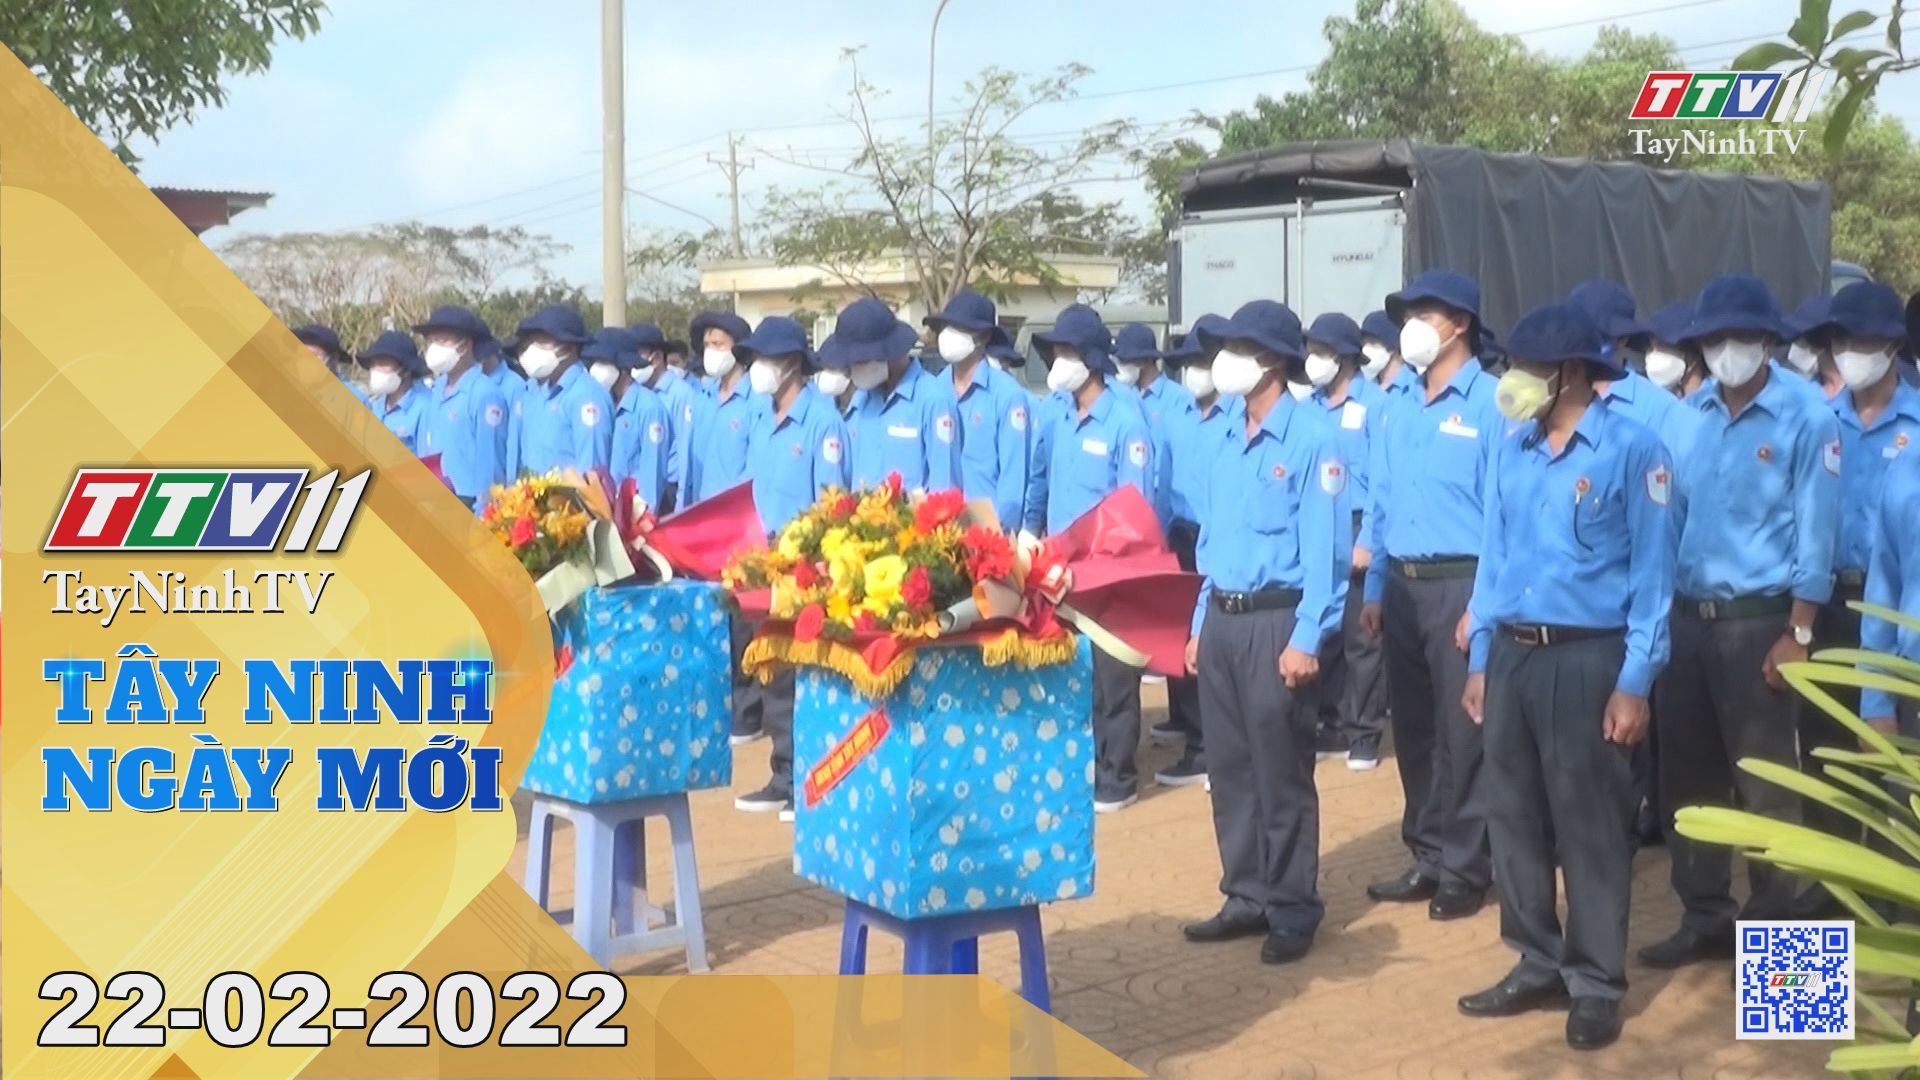 Tây Ninh ngày mới 22-02-2022 | Tin tức hôm nay | TayNinhTV